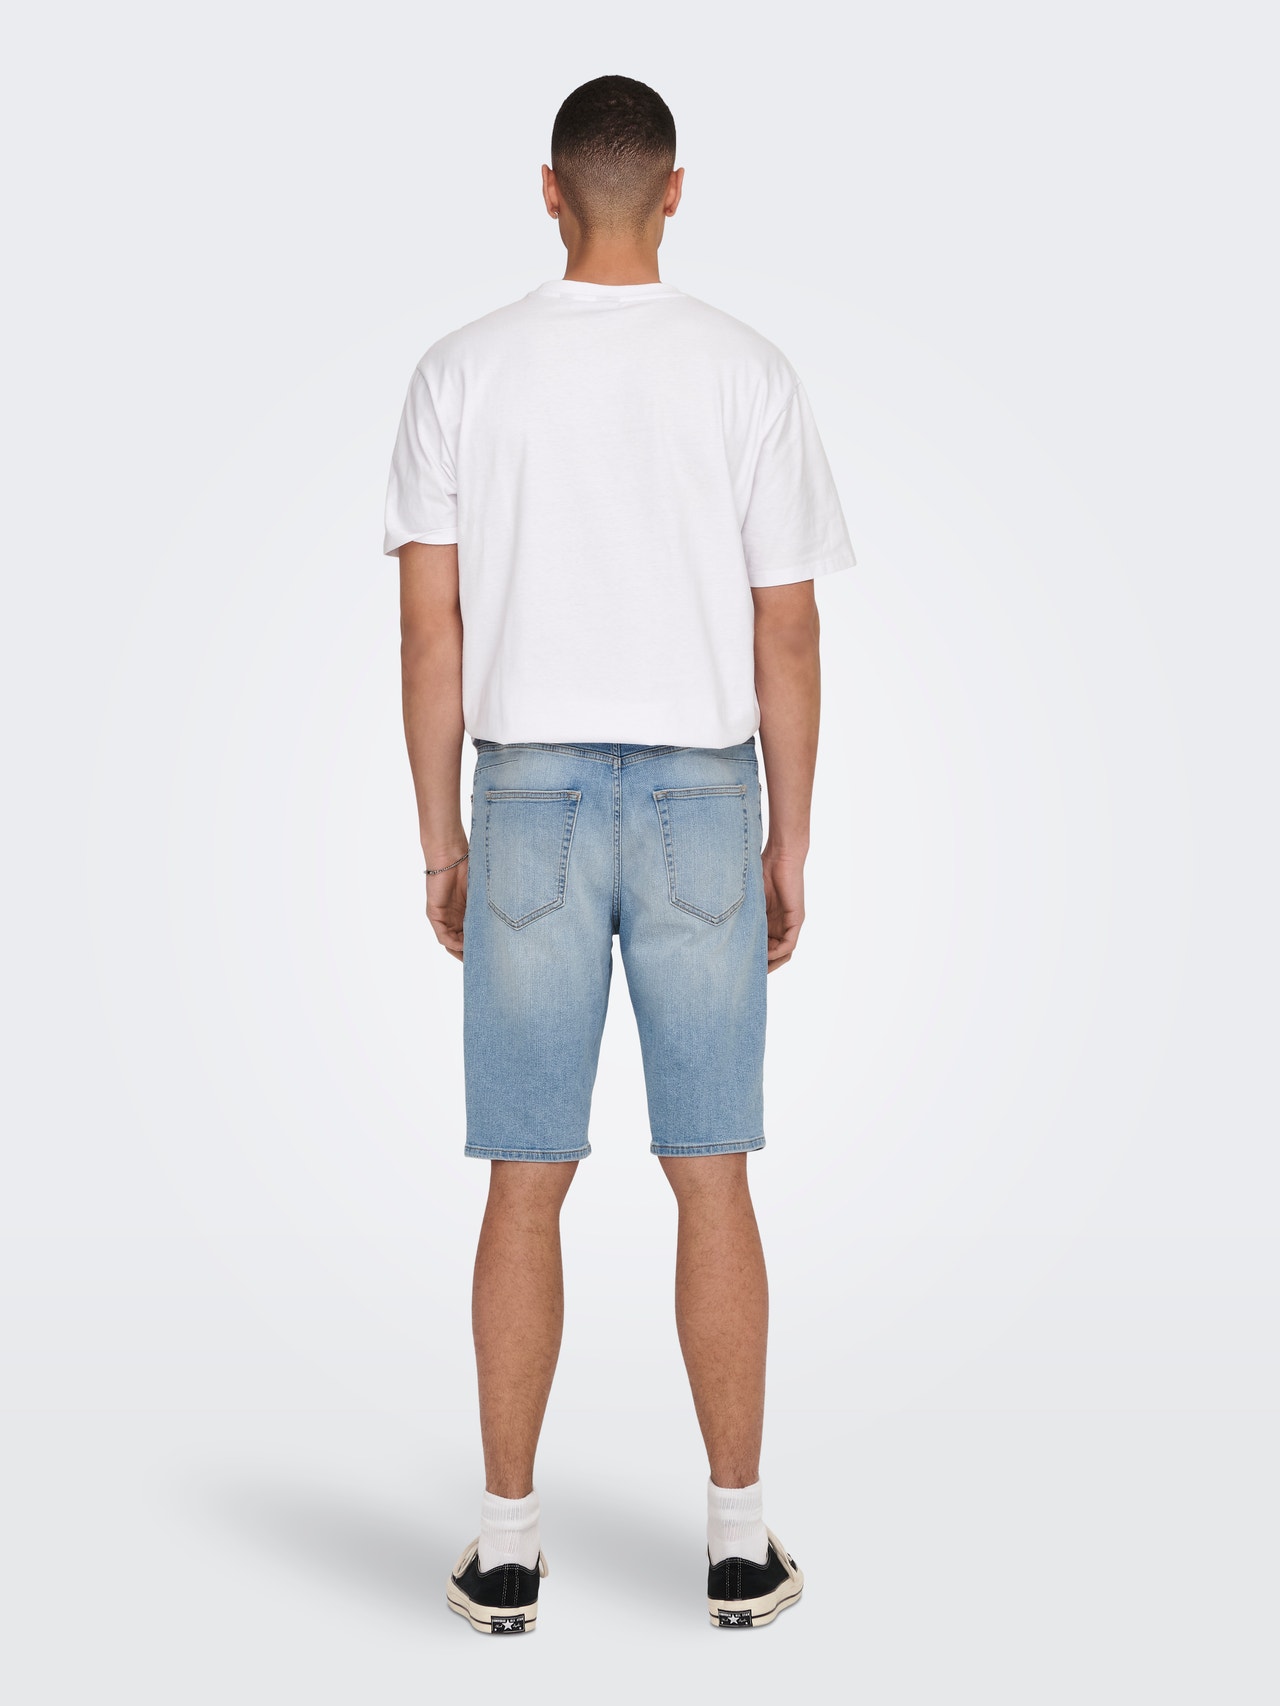 ONLY & SONS Shorts Corte regular -Light Blue Denim - 22025592